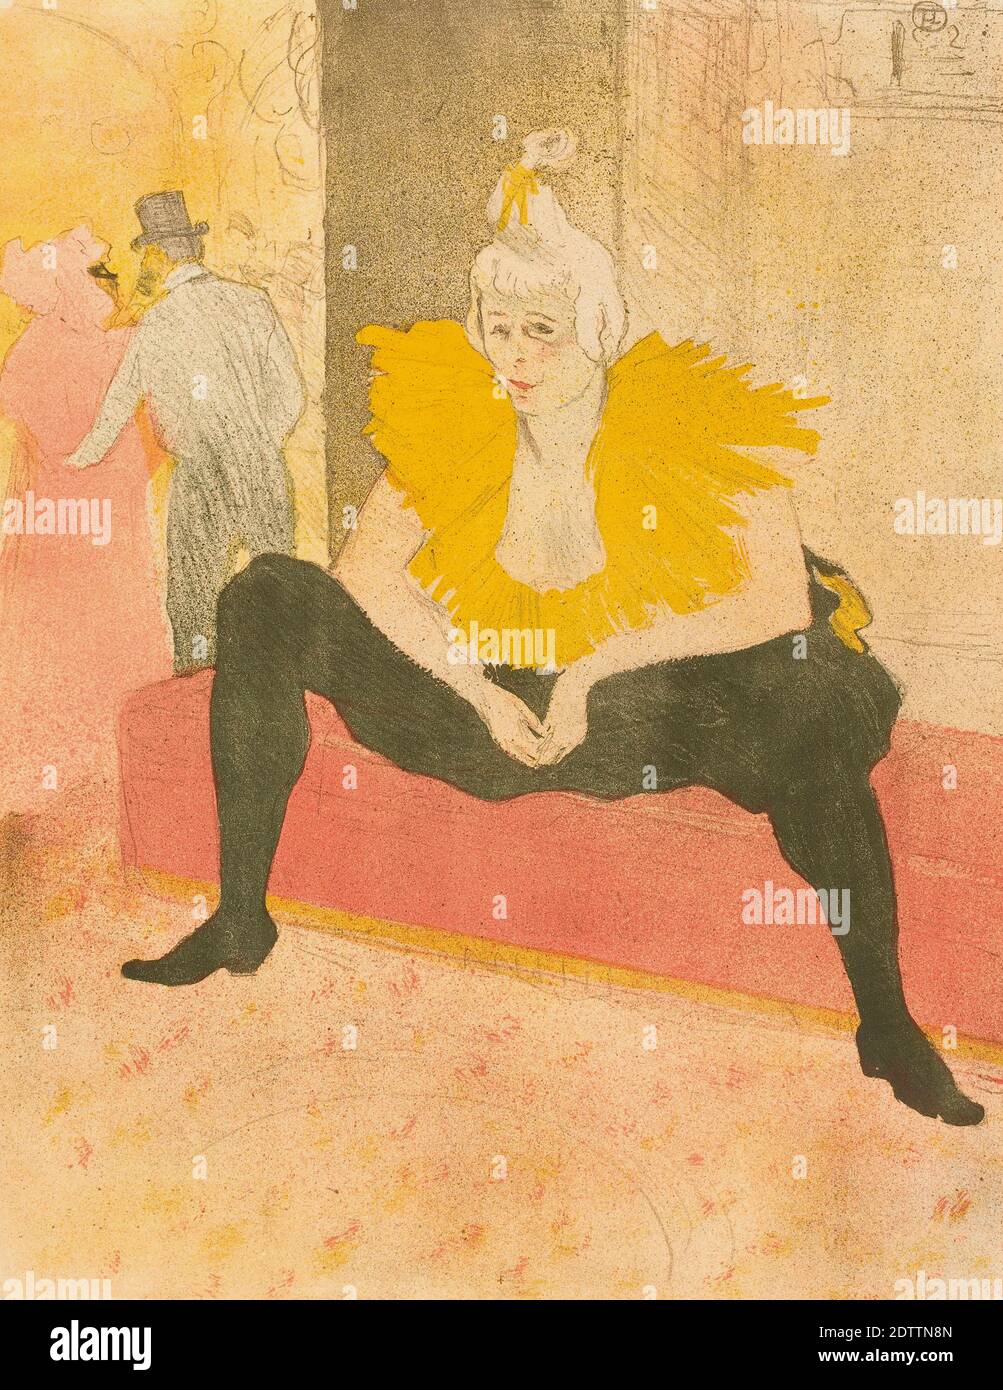 Die Clowness Cha-U-Kao saß. Nach einem farbigen Lithodruck von Henri de Toulouse-Lautrec im Jahr 1896. Aus seiner Serie Elles. Stockfoto